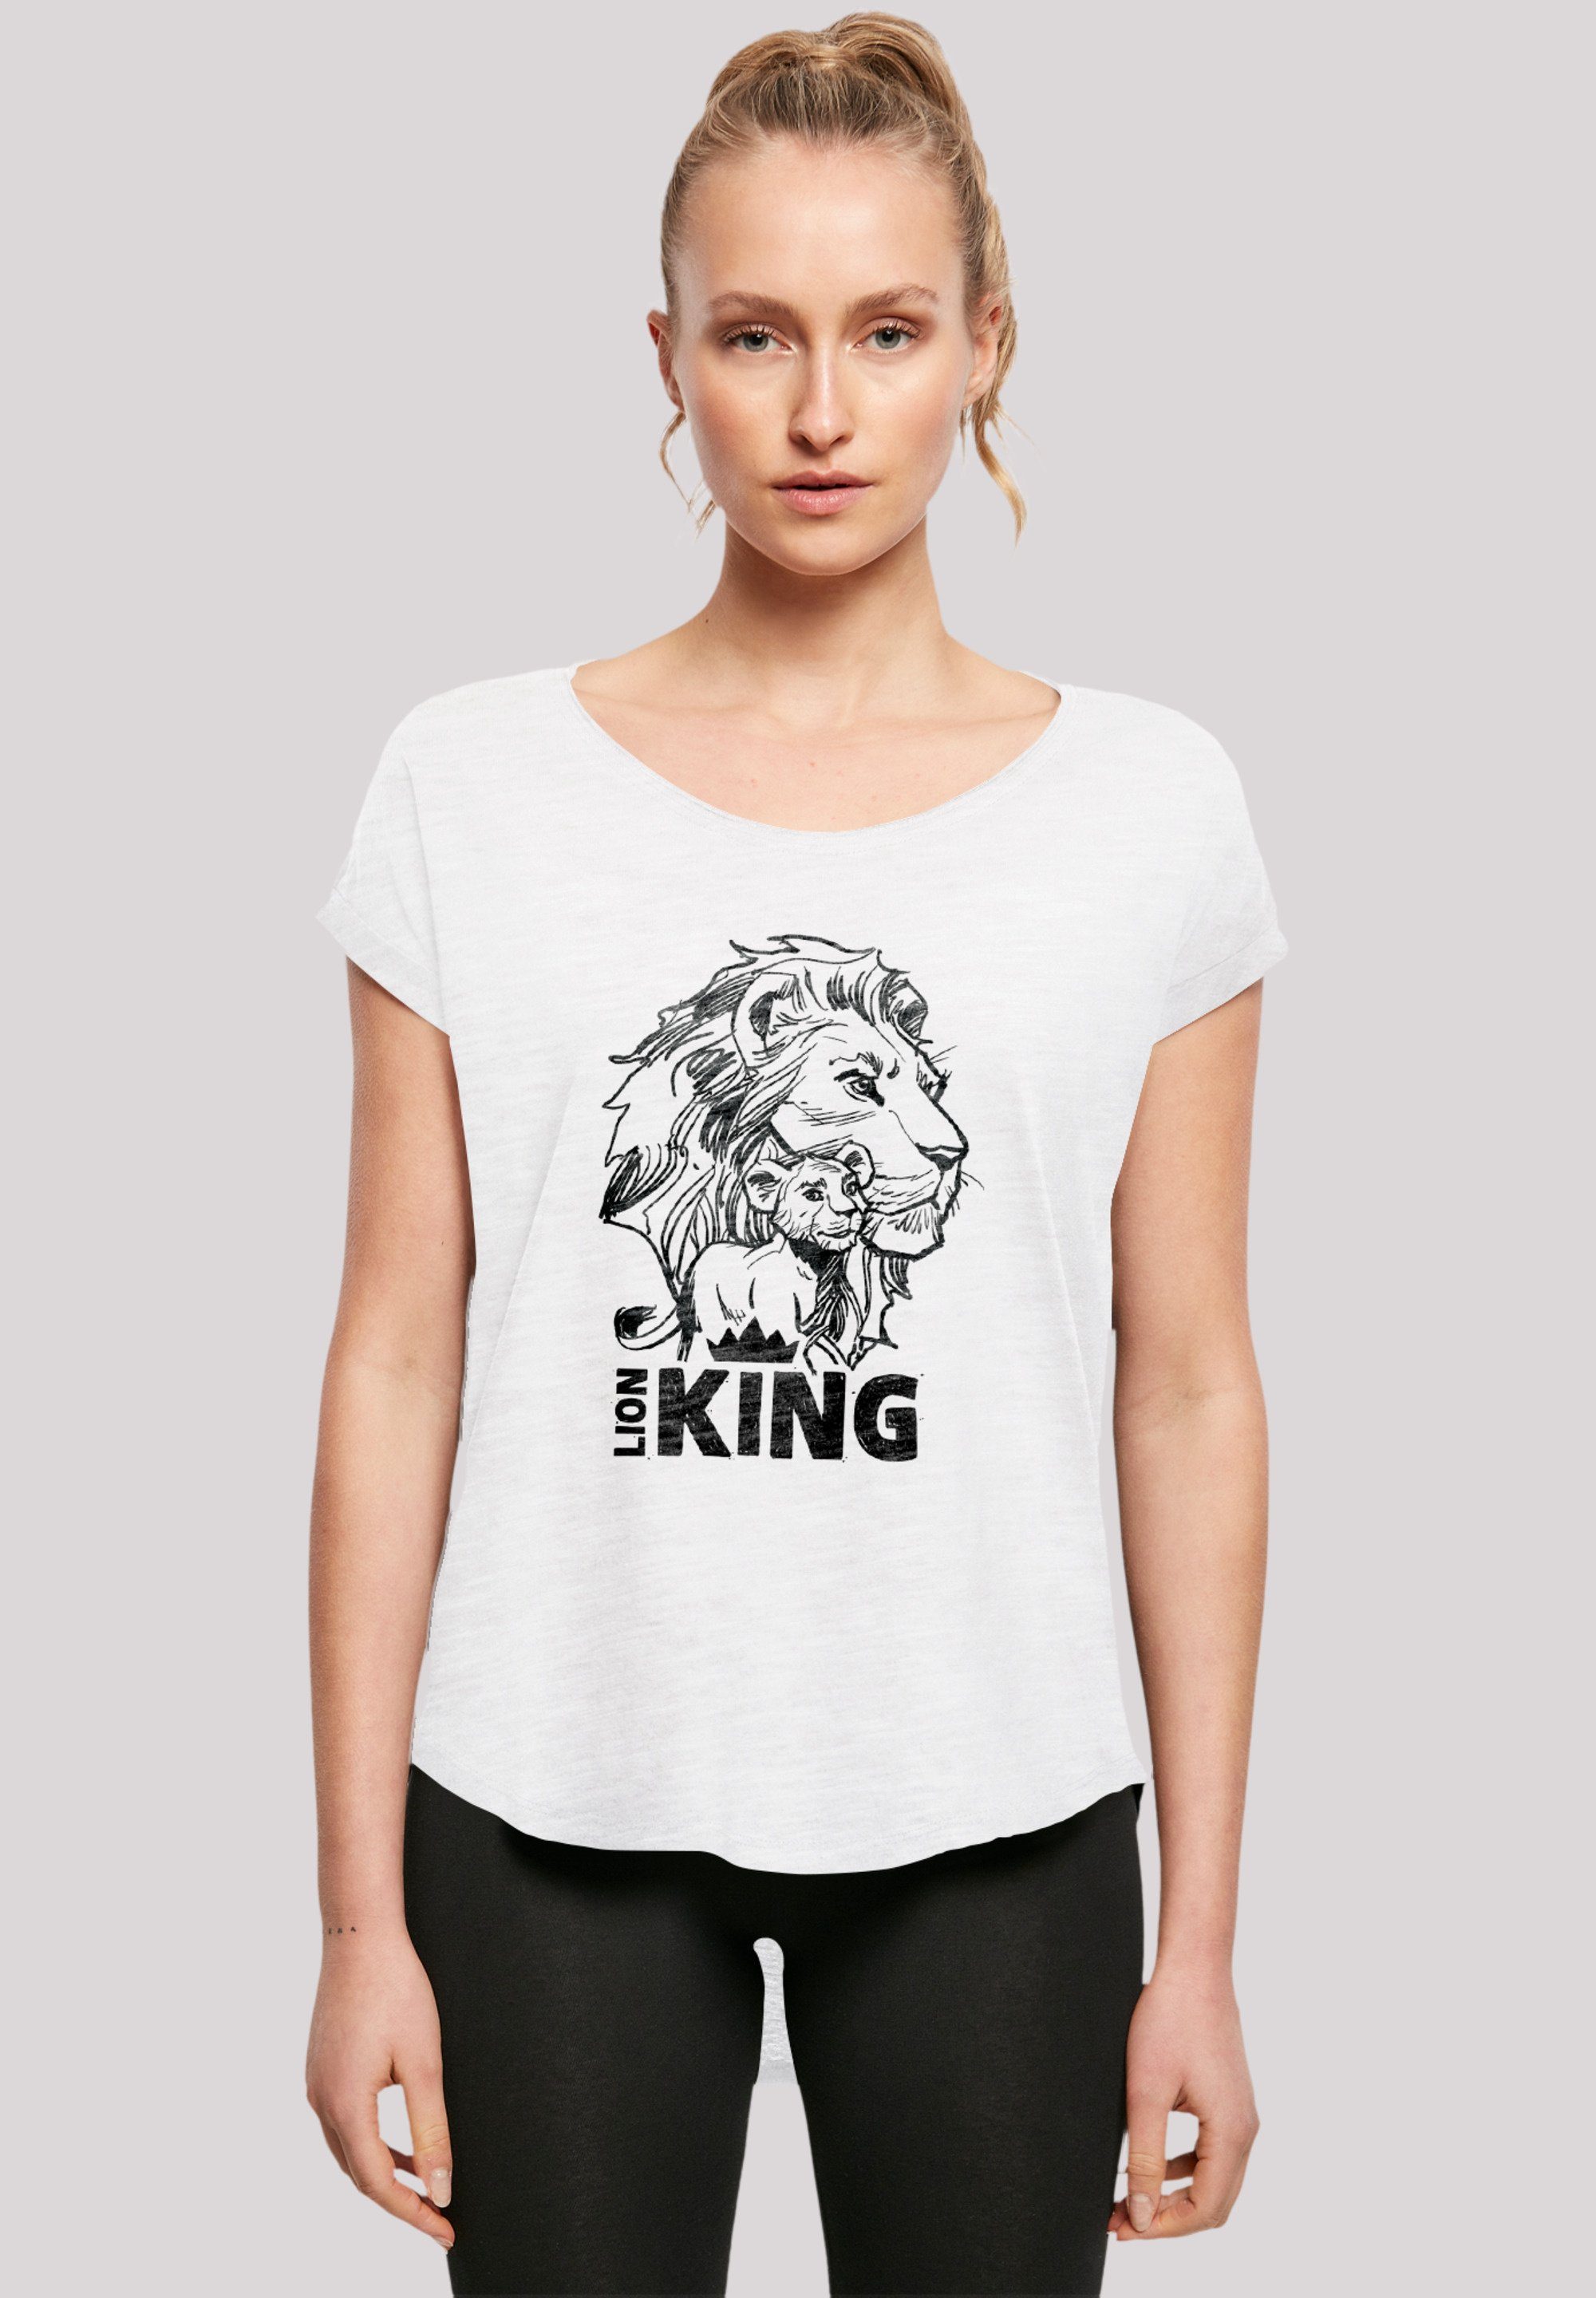 Premium Baumwollstoff white Qualität, Löwen Tragekomfort F4NT4STIC T-Shirt Sehr mit König weicher Disney hohem Together der